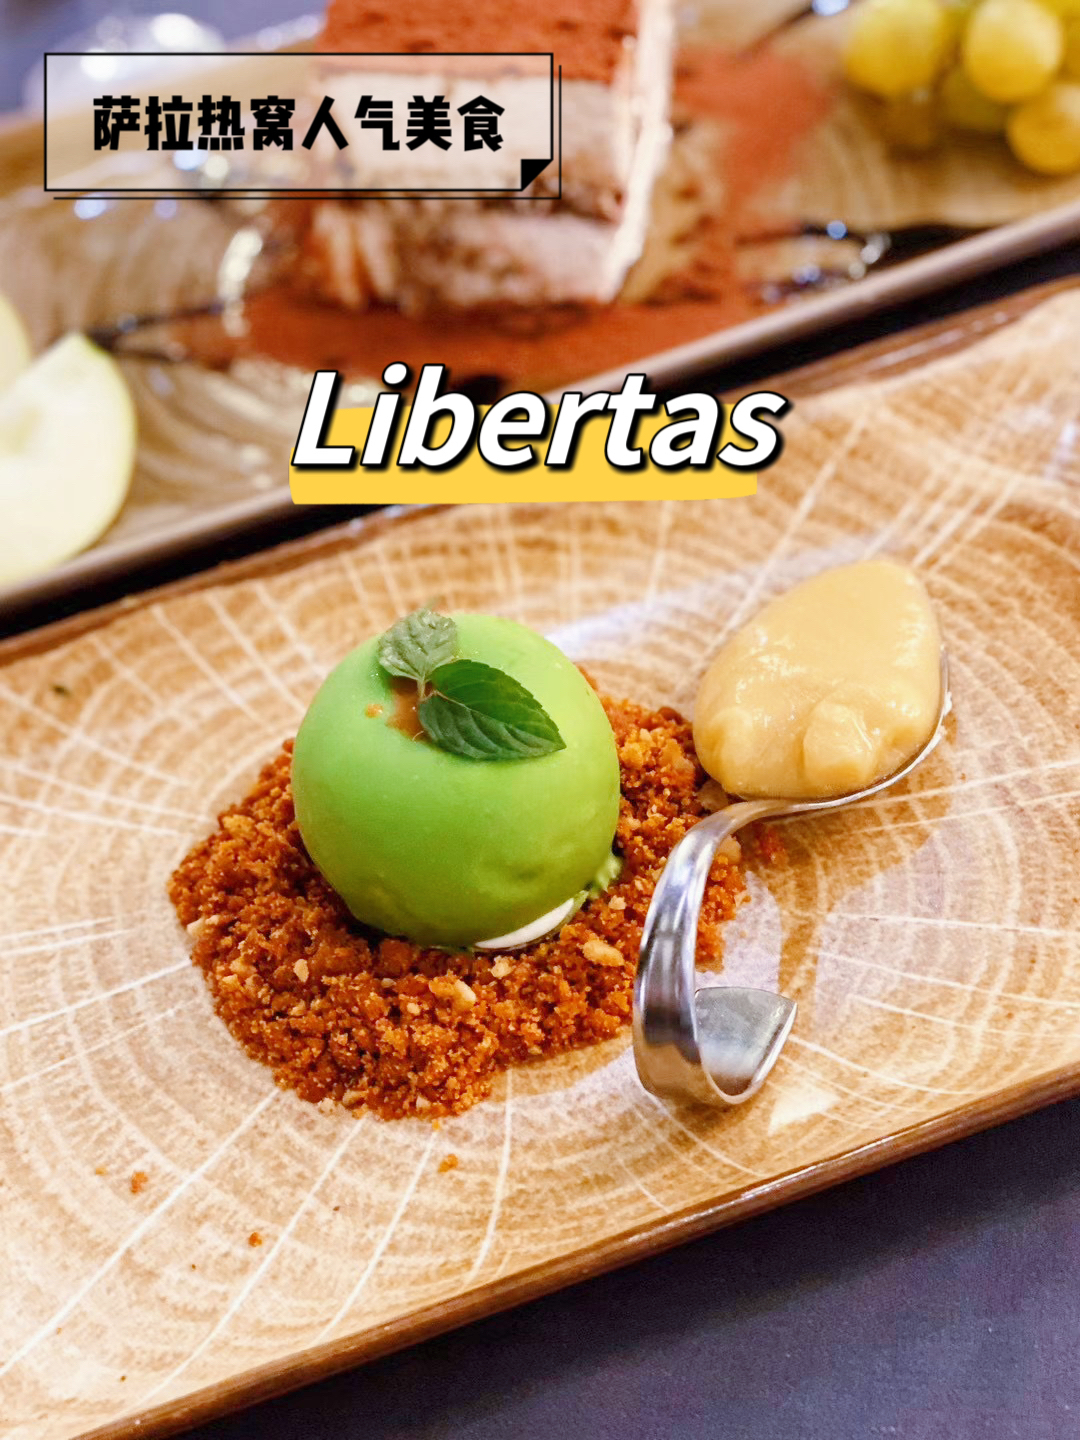 萨拉热窝人气美食——Libertas